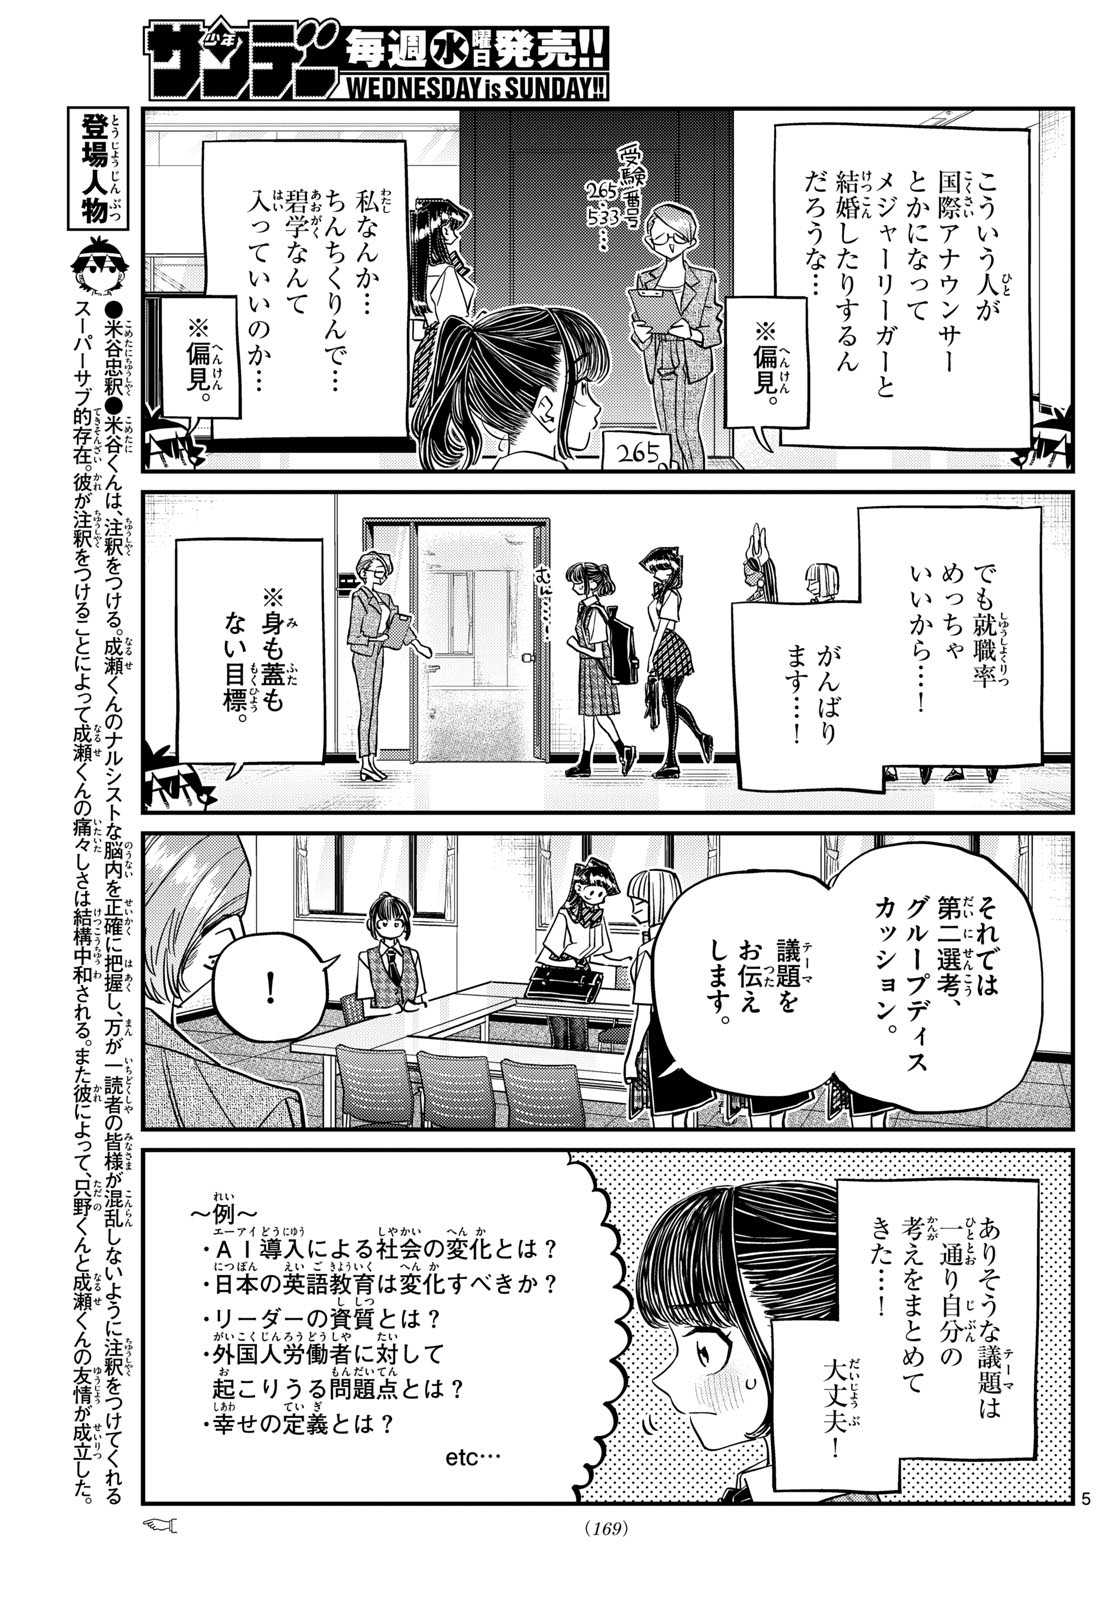 Komi-san wa Komyushou Desu - Chapter 437 - Page 5